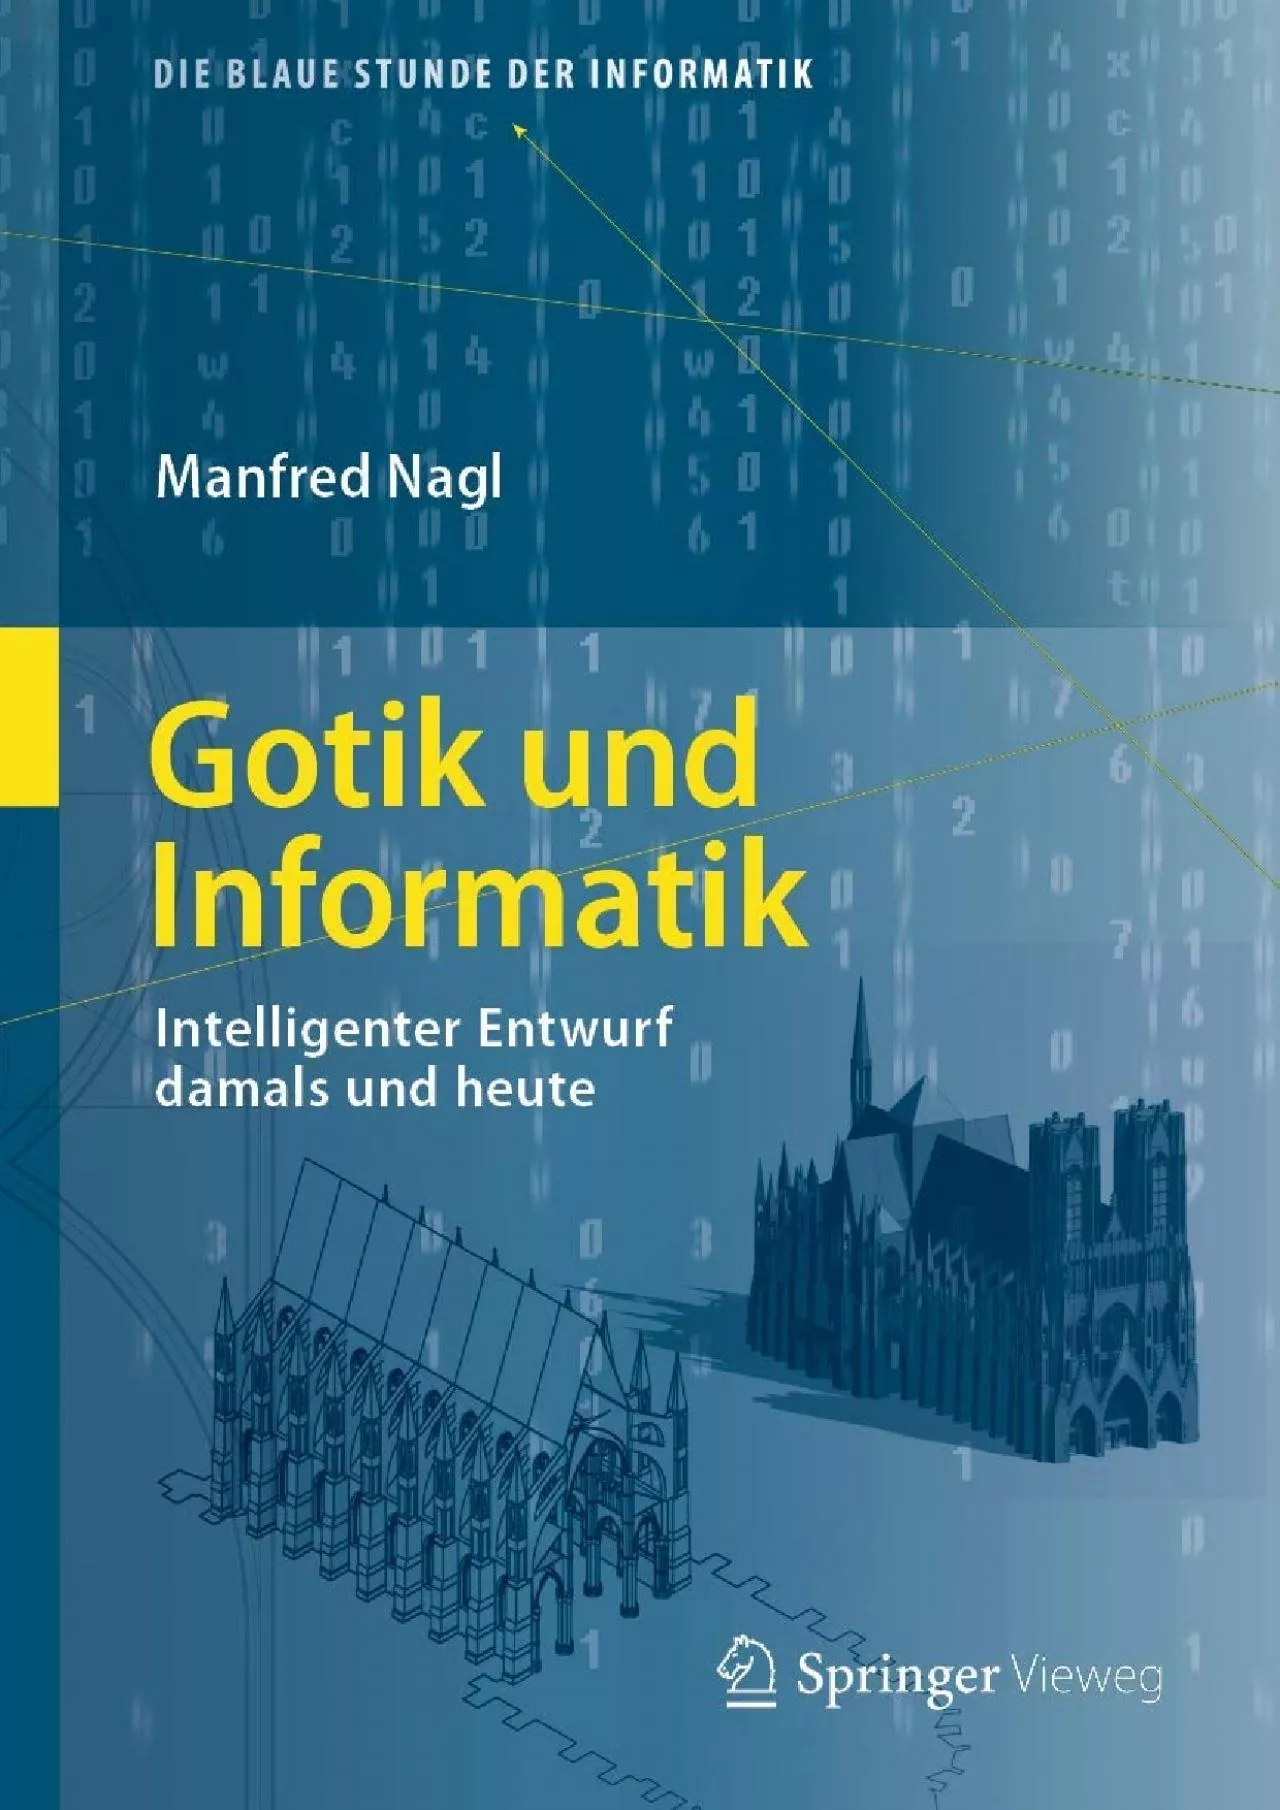 [READ]-Gotik und Informatik: Intelligenter Entwurf damals und heute (Die blaue Stunde